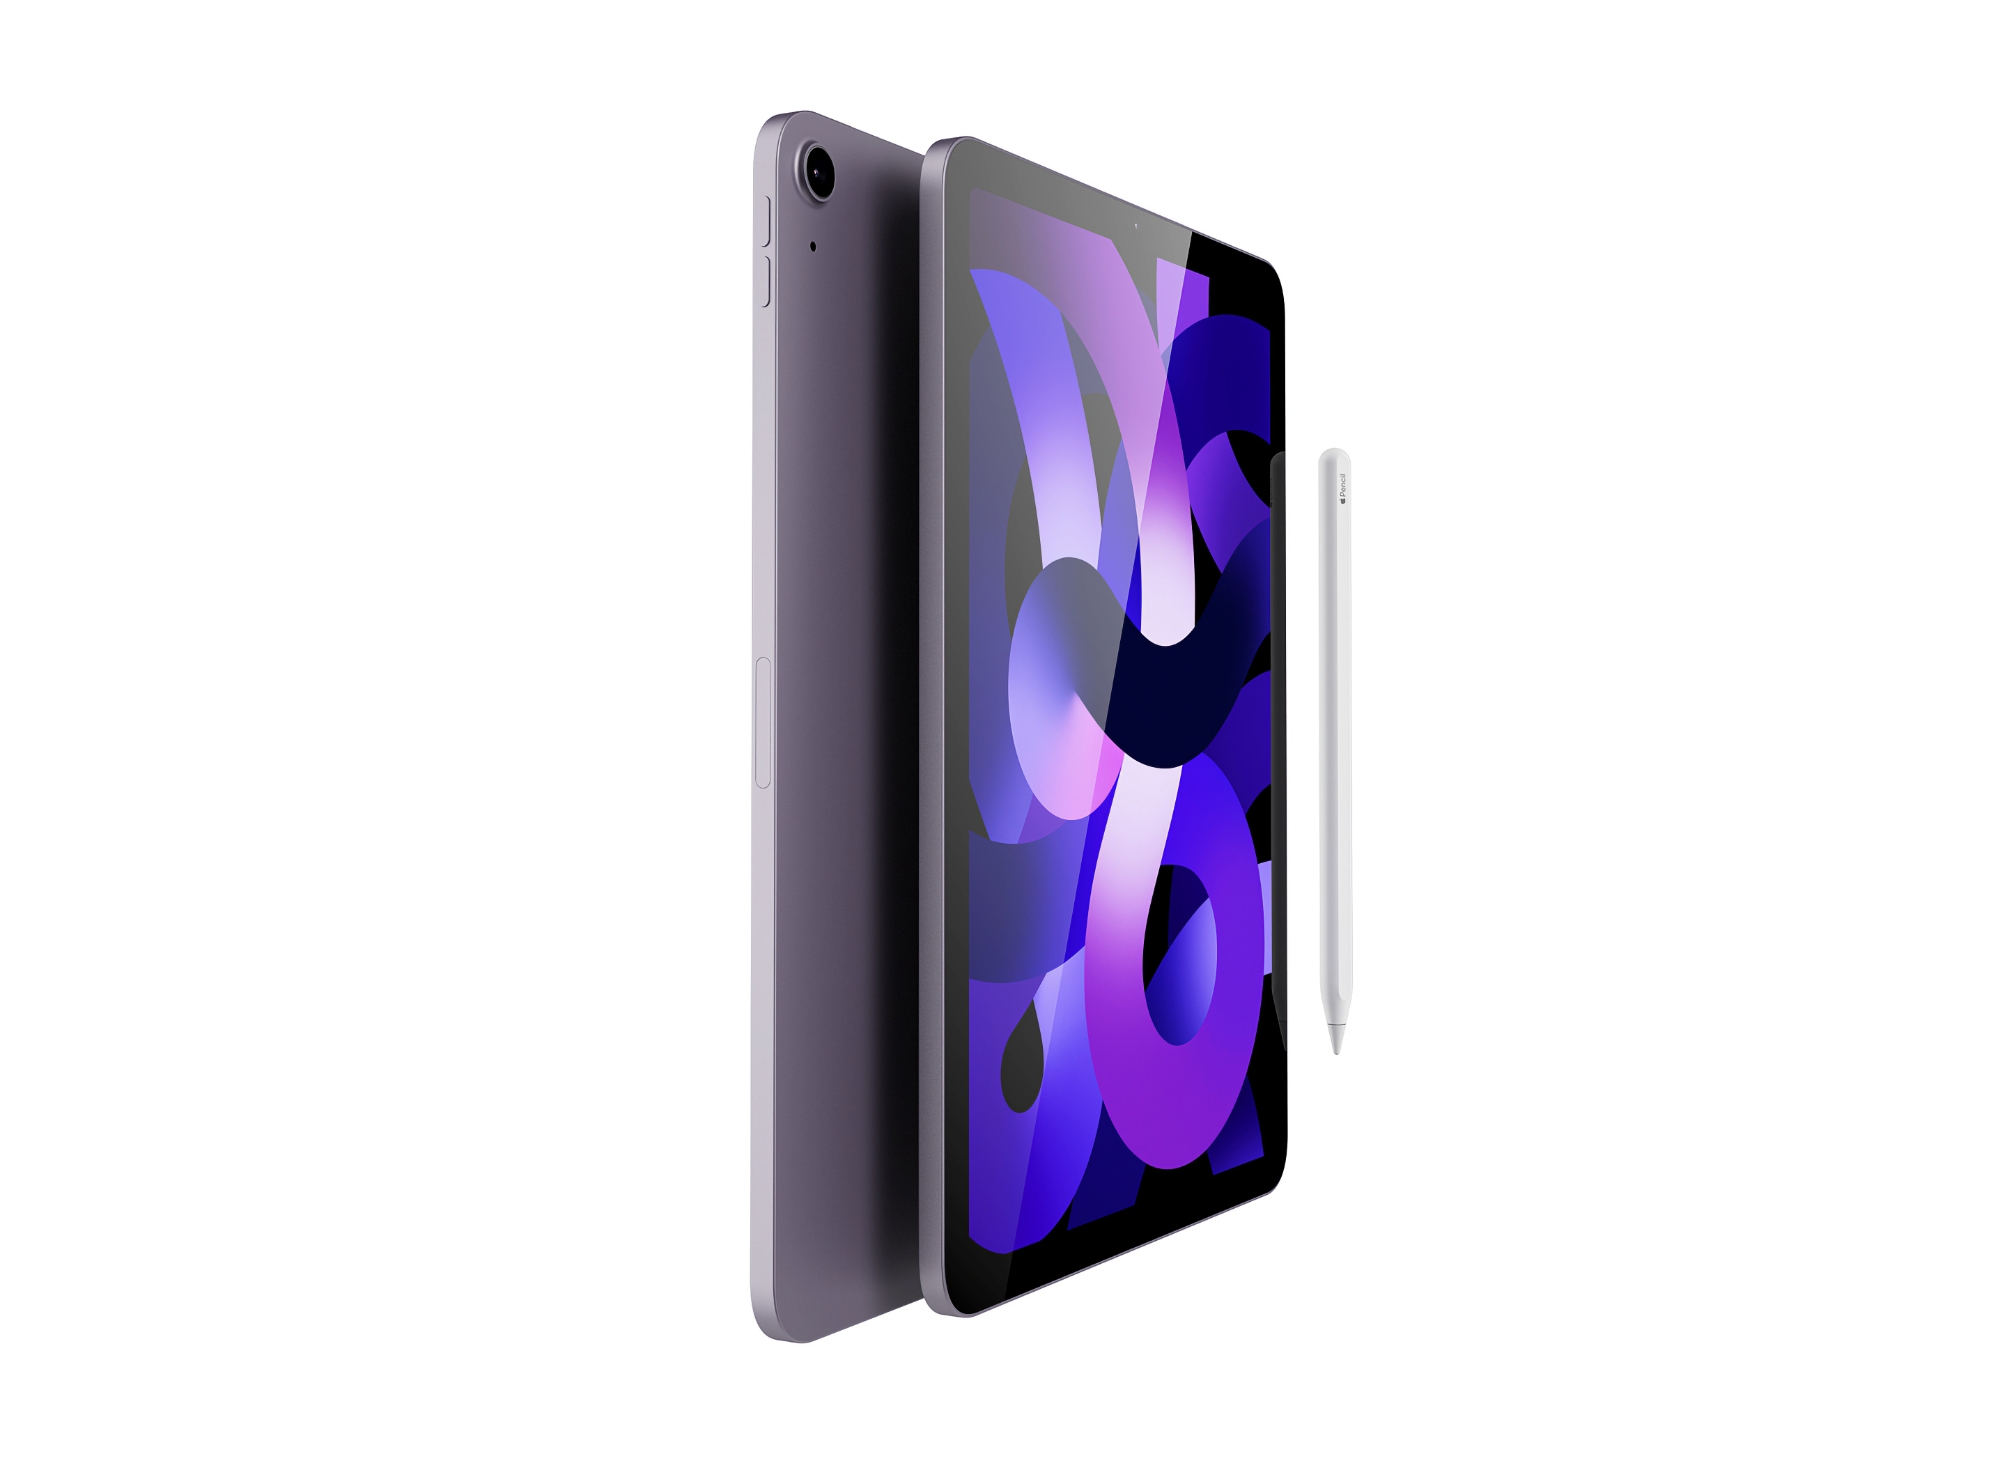 Oferta del día: El iPad Air con procesador M1 se puede comprar en Amazon con un descuento de hasta 150 dólares